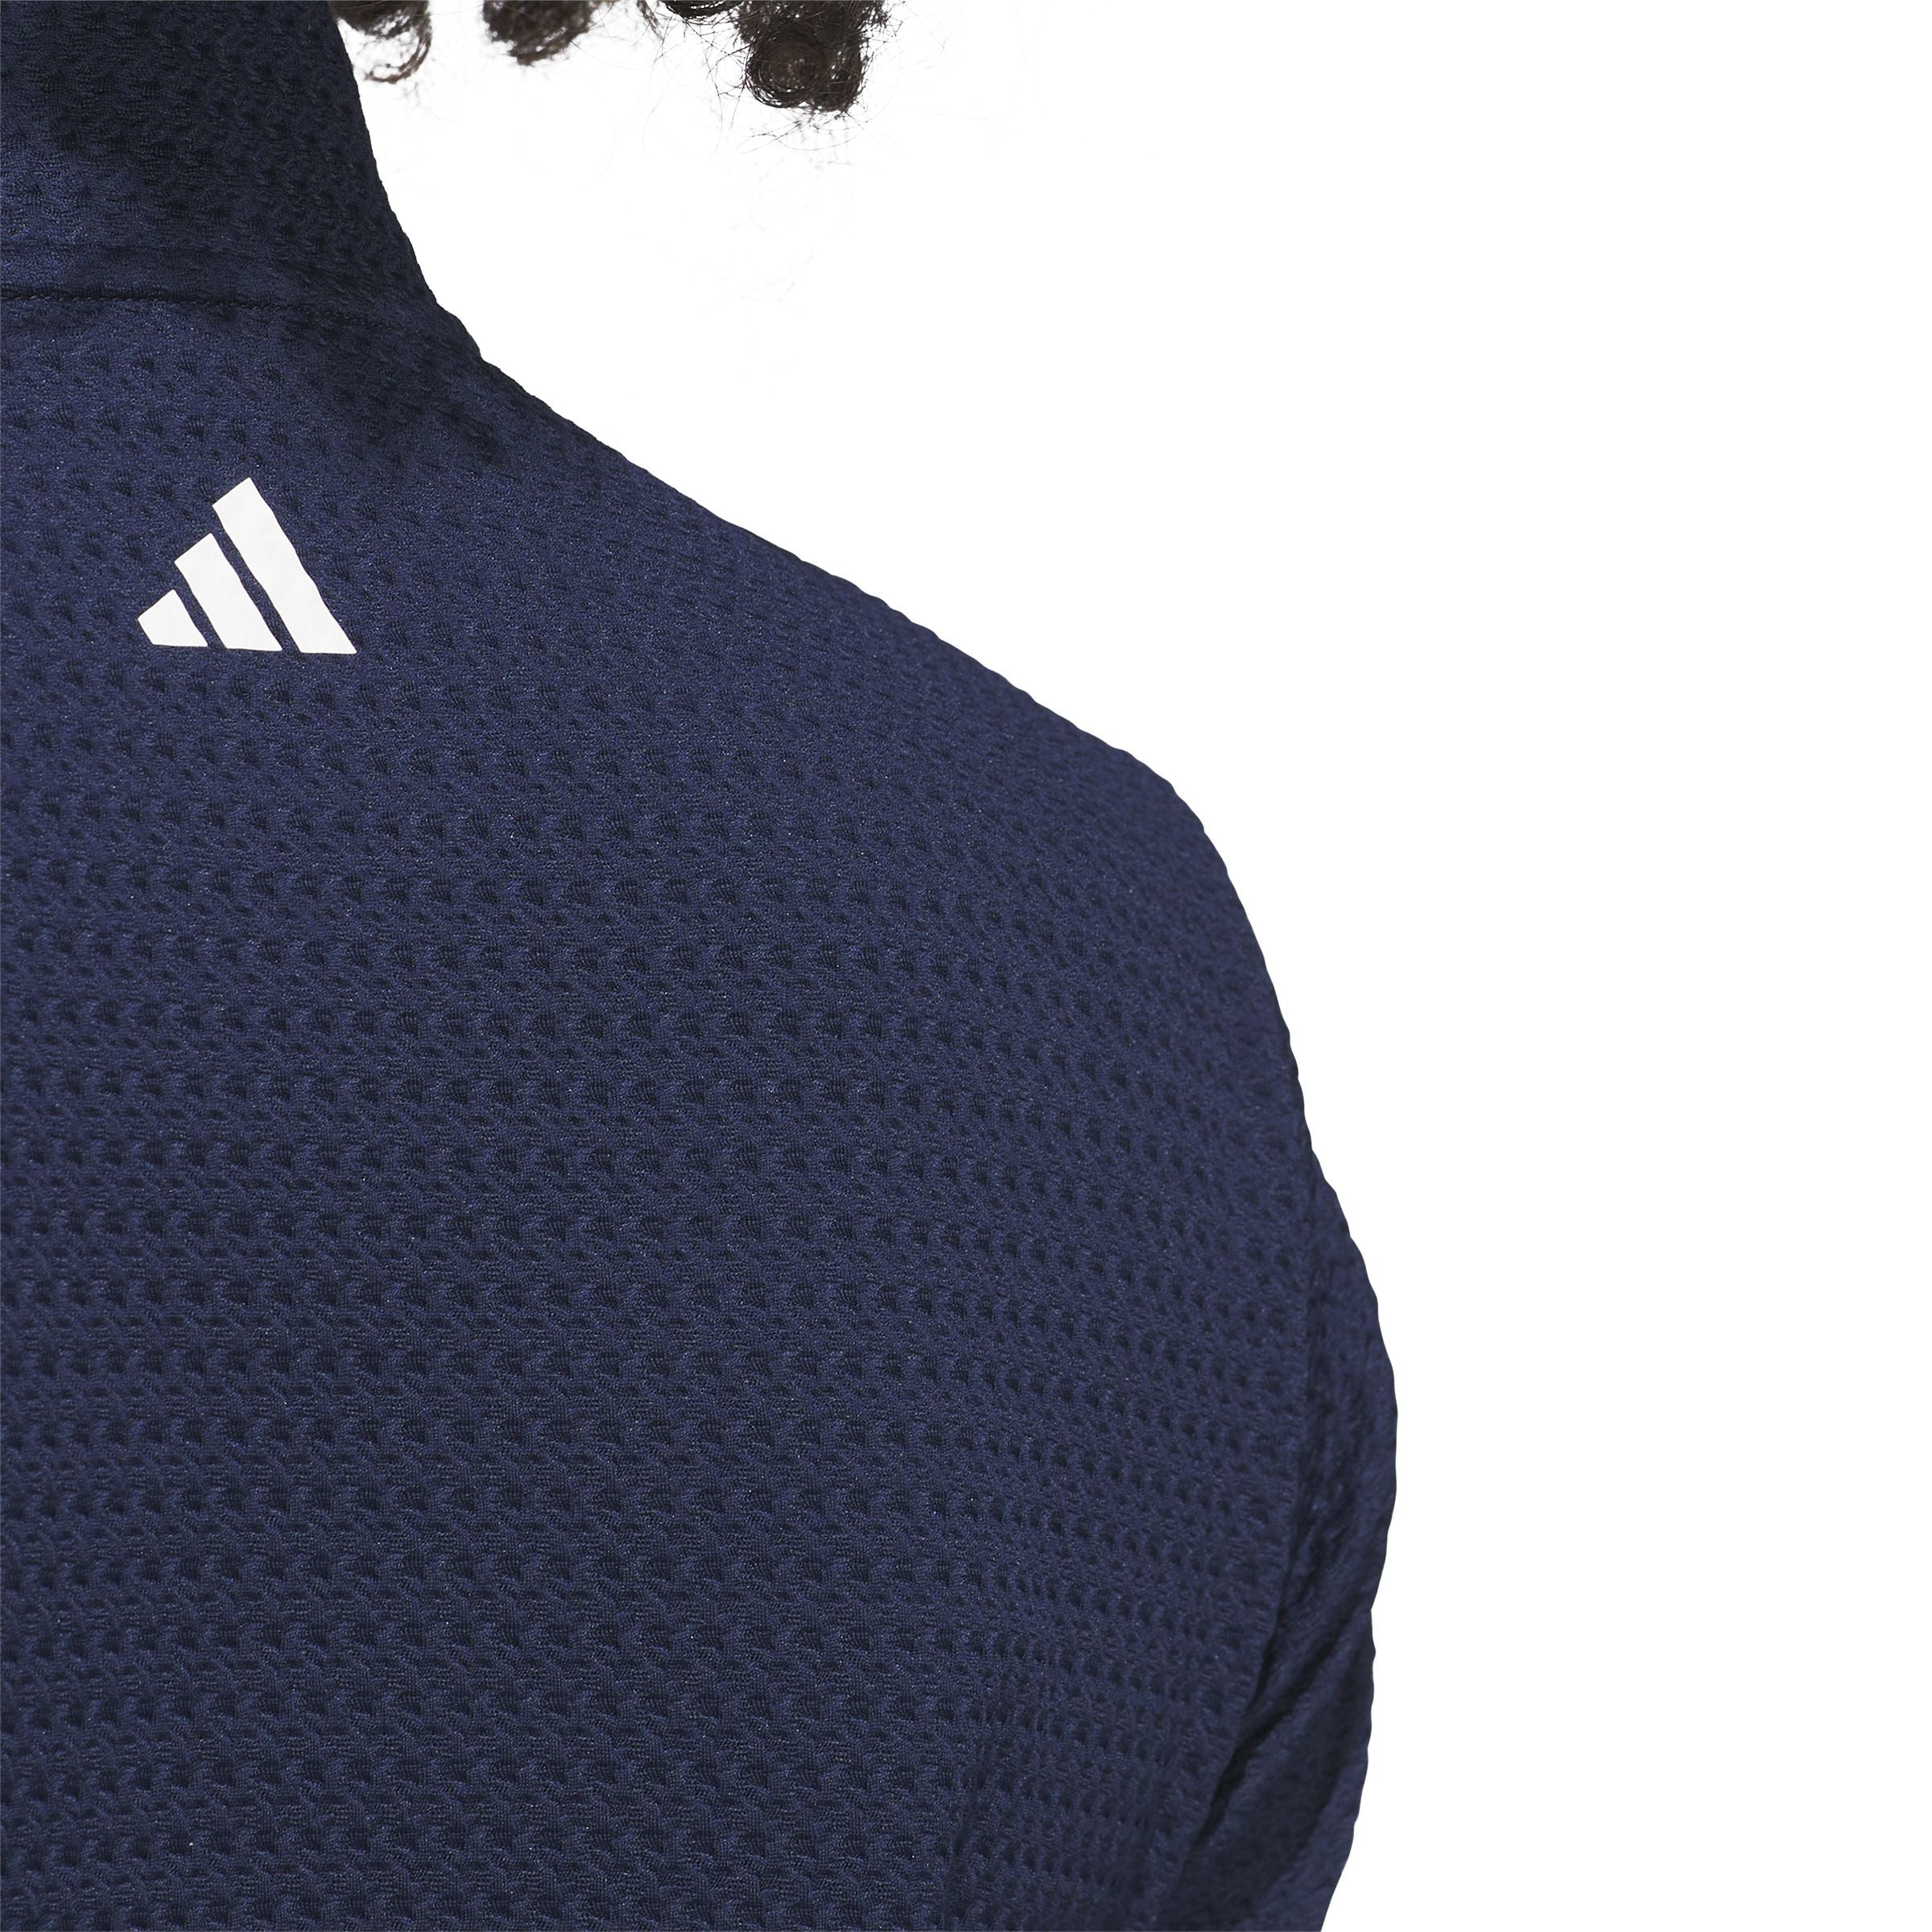 Adidas Ultimate365 Textured Jacket